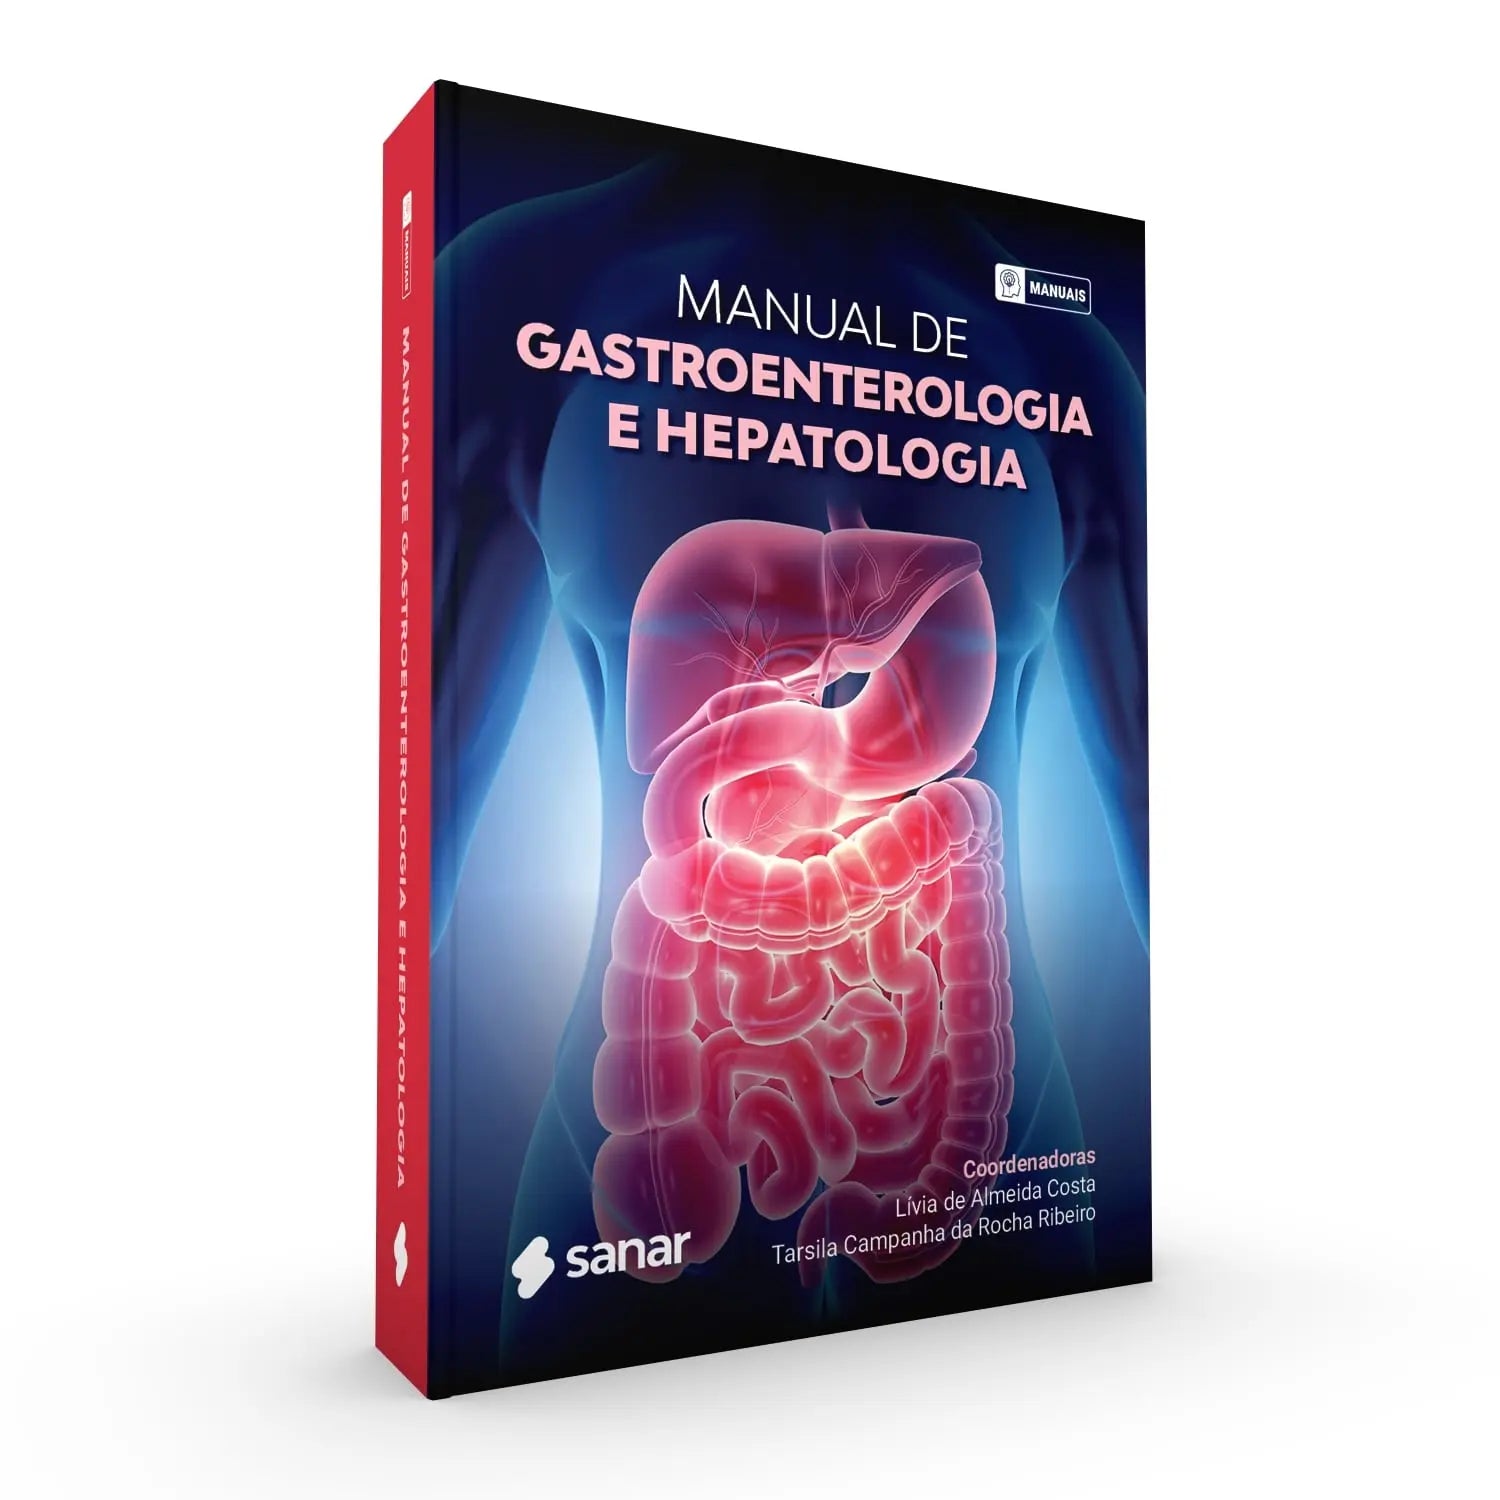 Imagem do livro Manual Gastroenterologia e Hepatologia